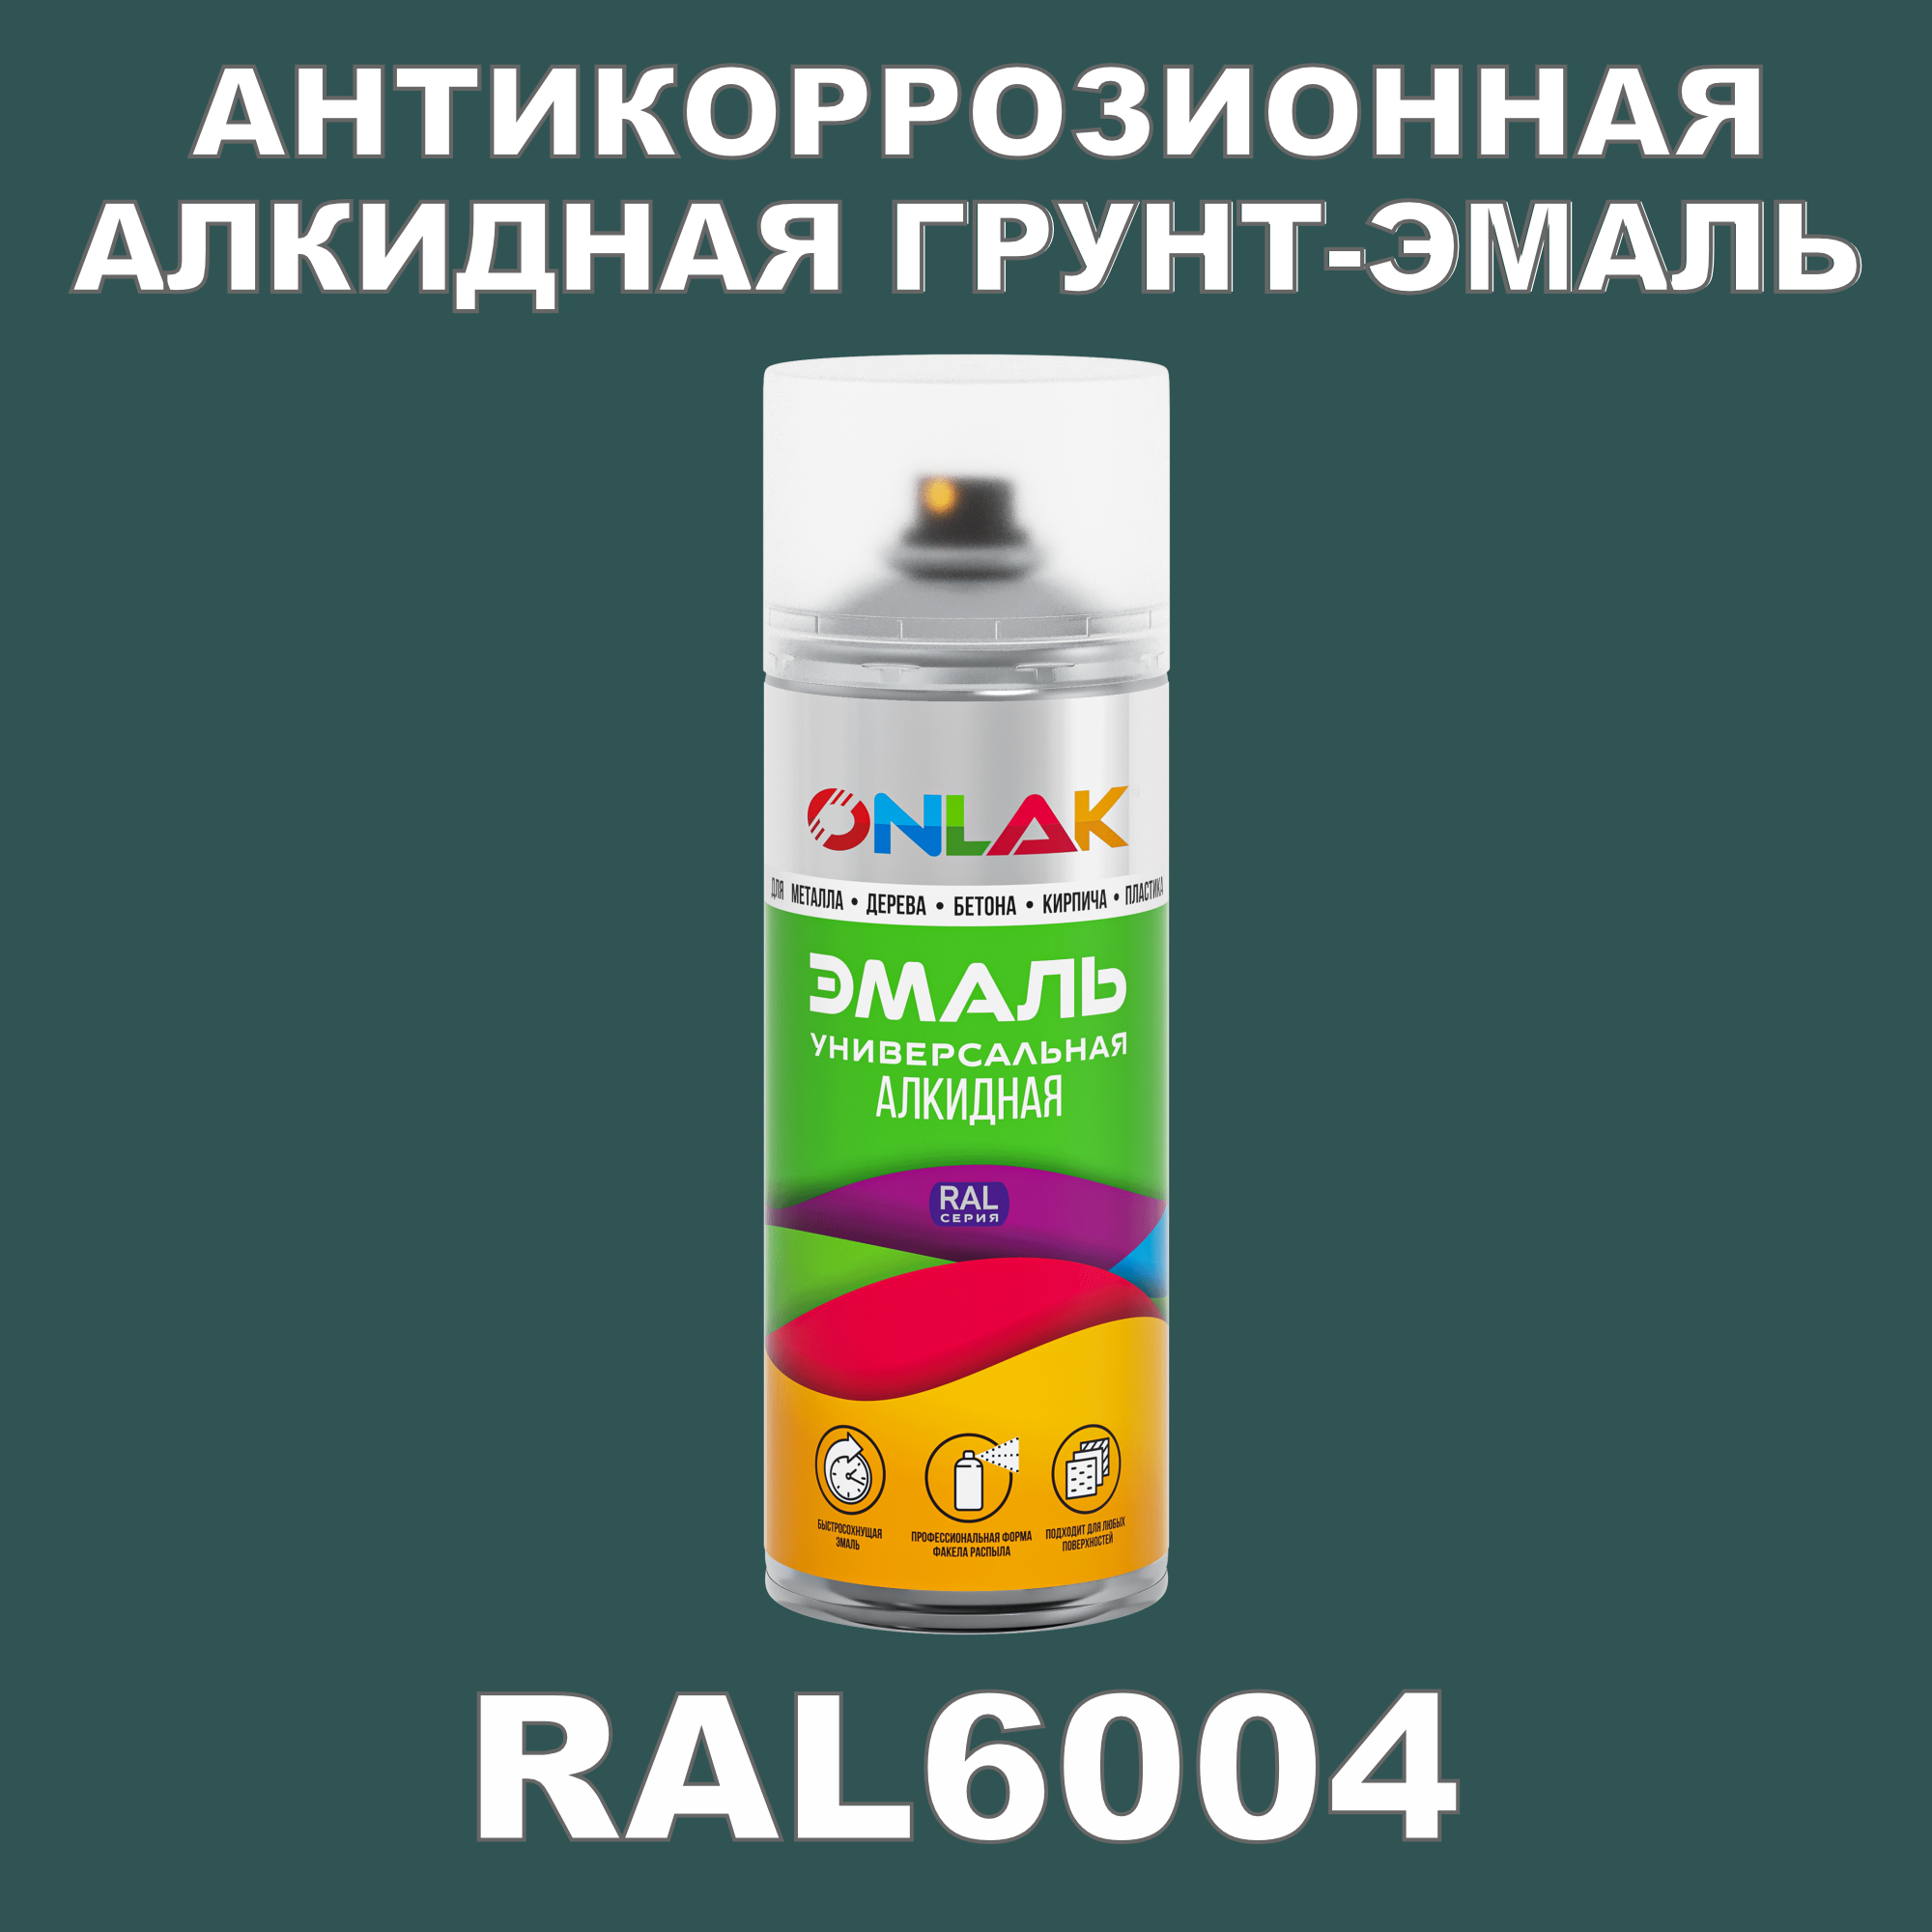 Антикоррозионная грунт-эмаль ONLAK RAL6004 полуматовая для металла и защиты от ржавчины